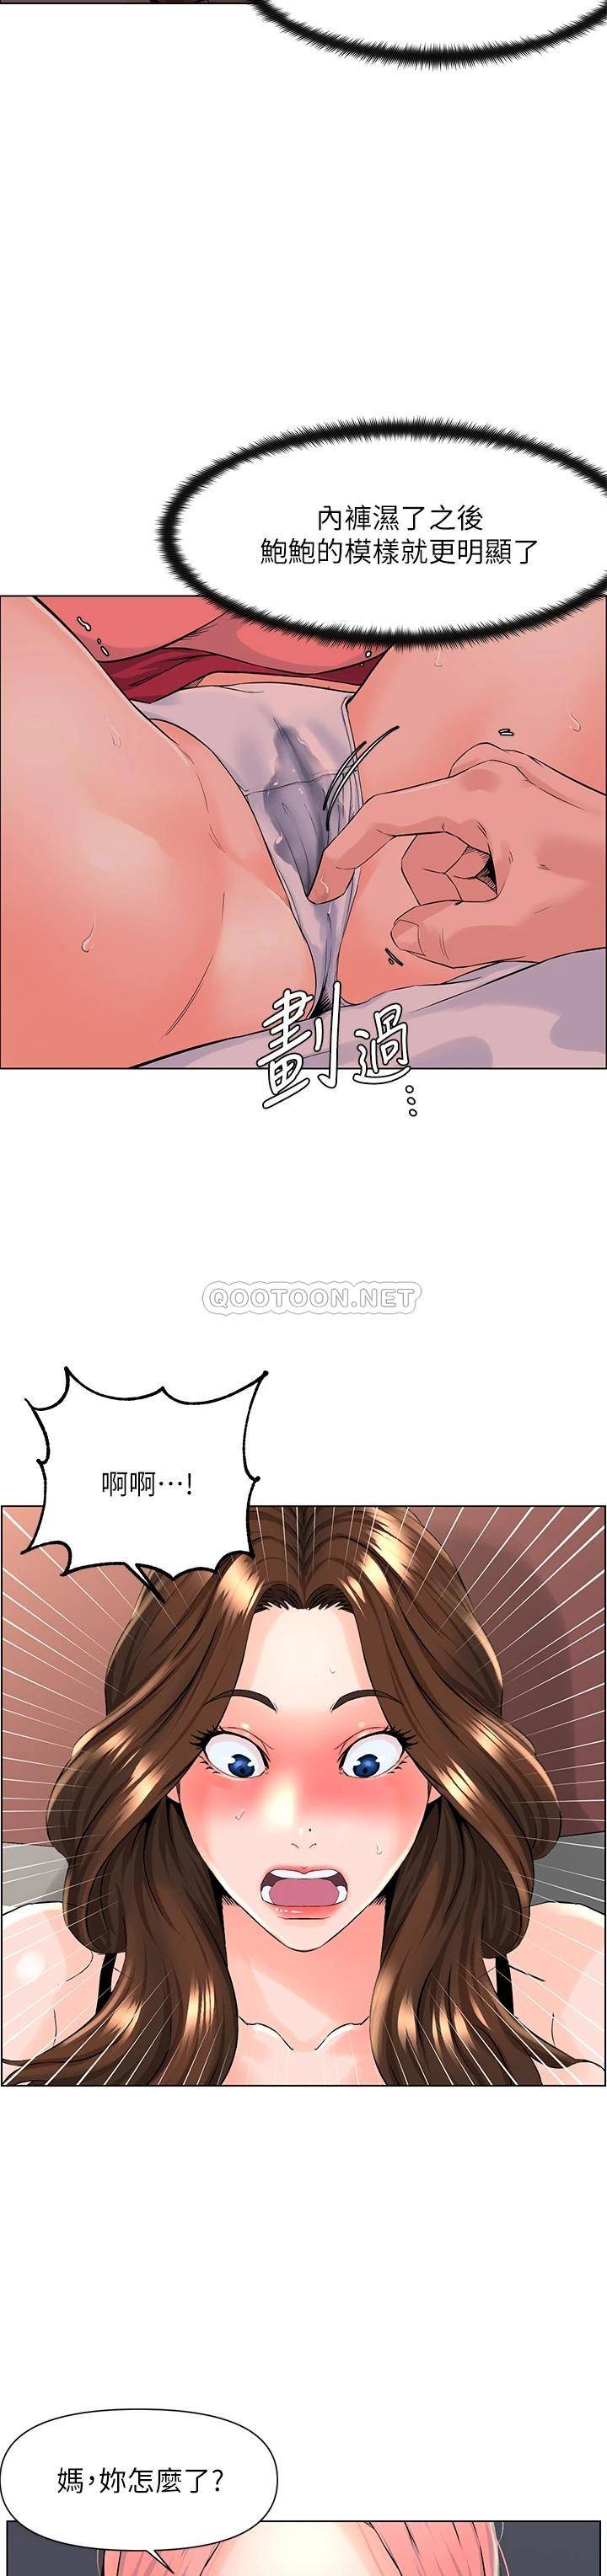 韩国污漫画 現上教學 第9话汗水淋漓的车震 9